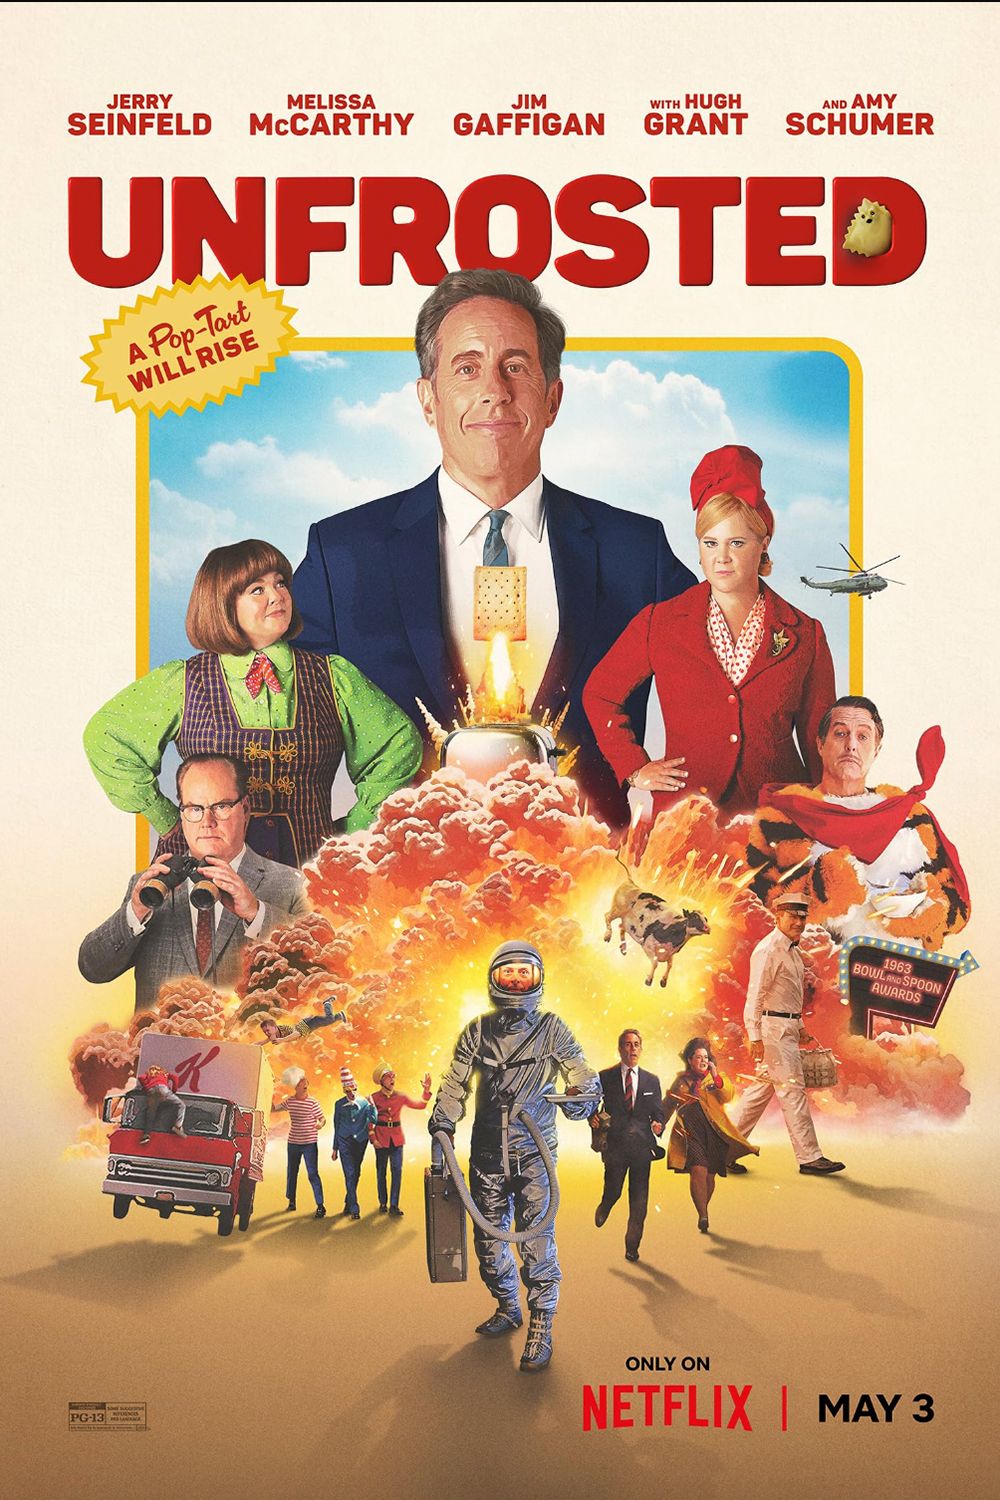 Affiche de film non givrée montrant Jerry Seinfeld, Melissa McCarthy, Jim Gaffigan, Hugh Grant et Amy Schumer debout près d'une explosion et d'une vache volante